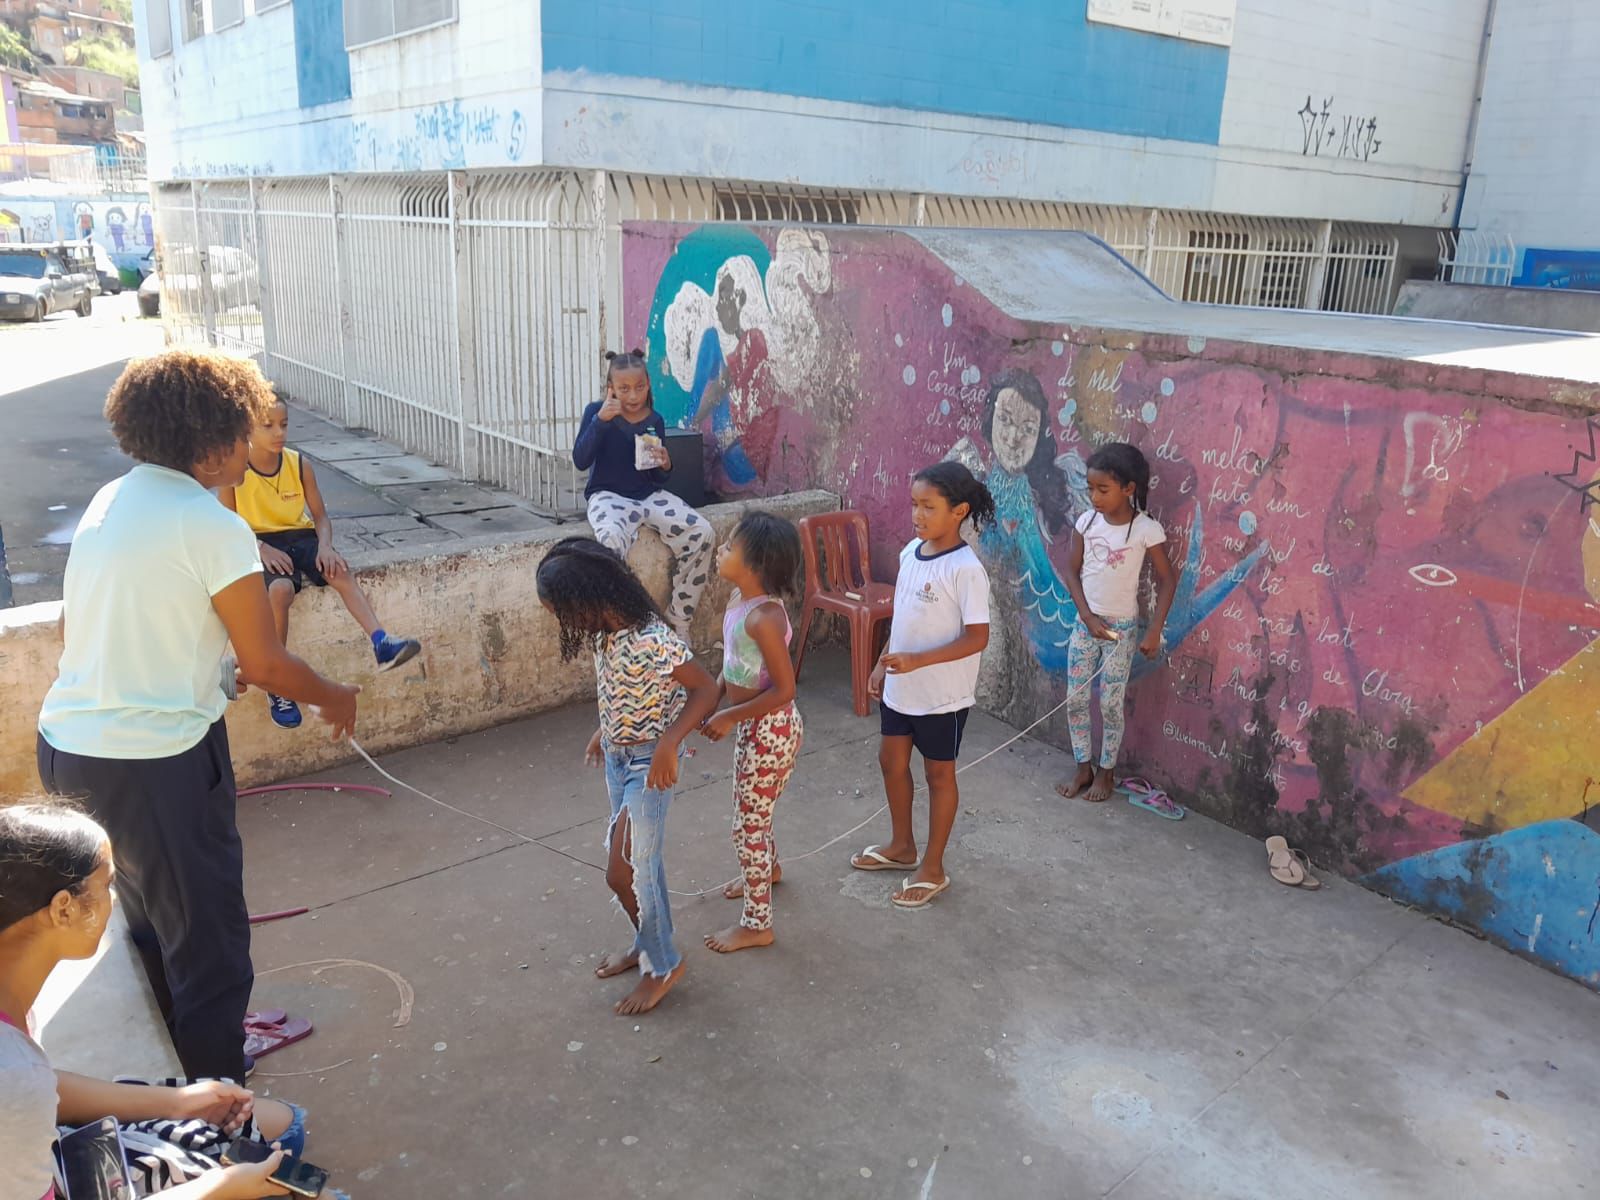 Fotografia com crianças enfileiradas brincando de pular corda, com roupas coloridas. Muros com desenhos coloridos.